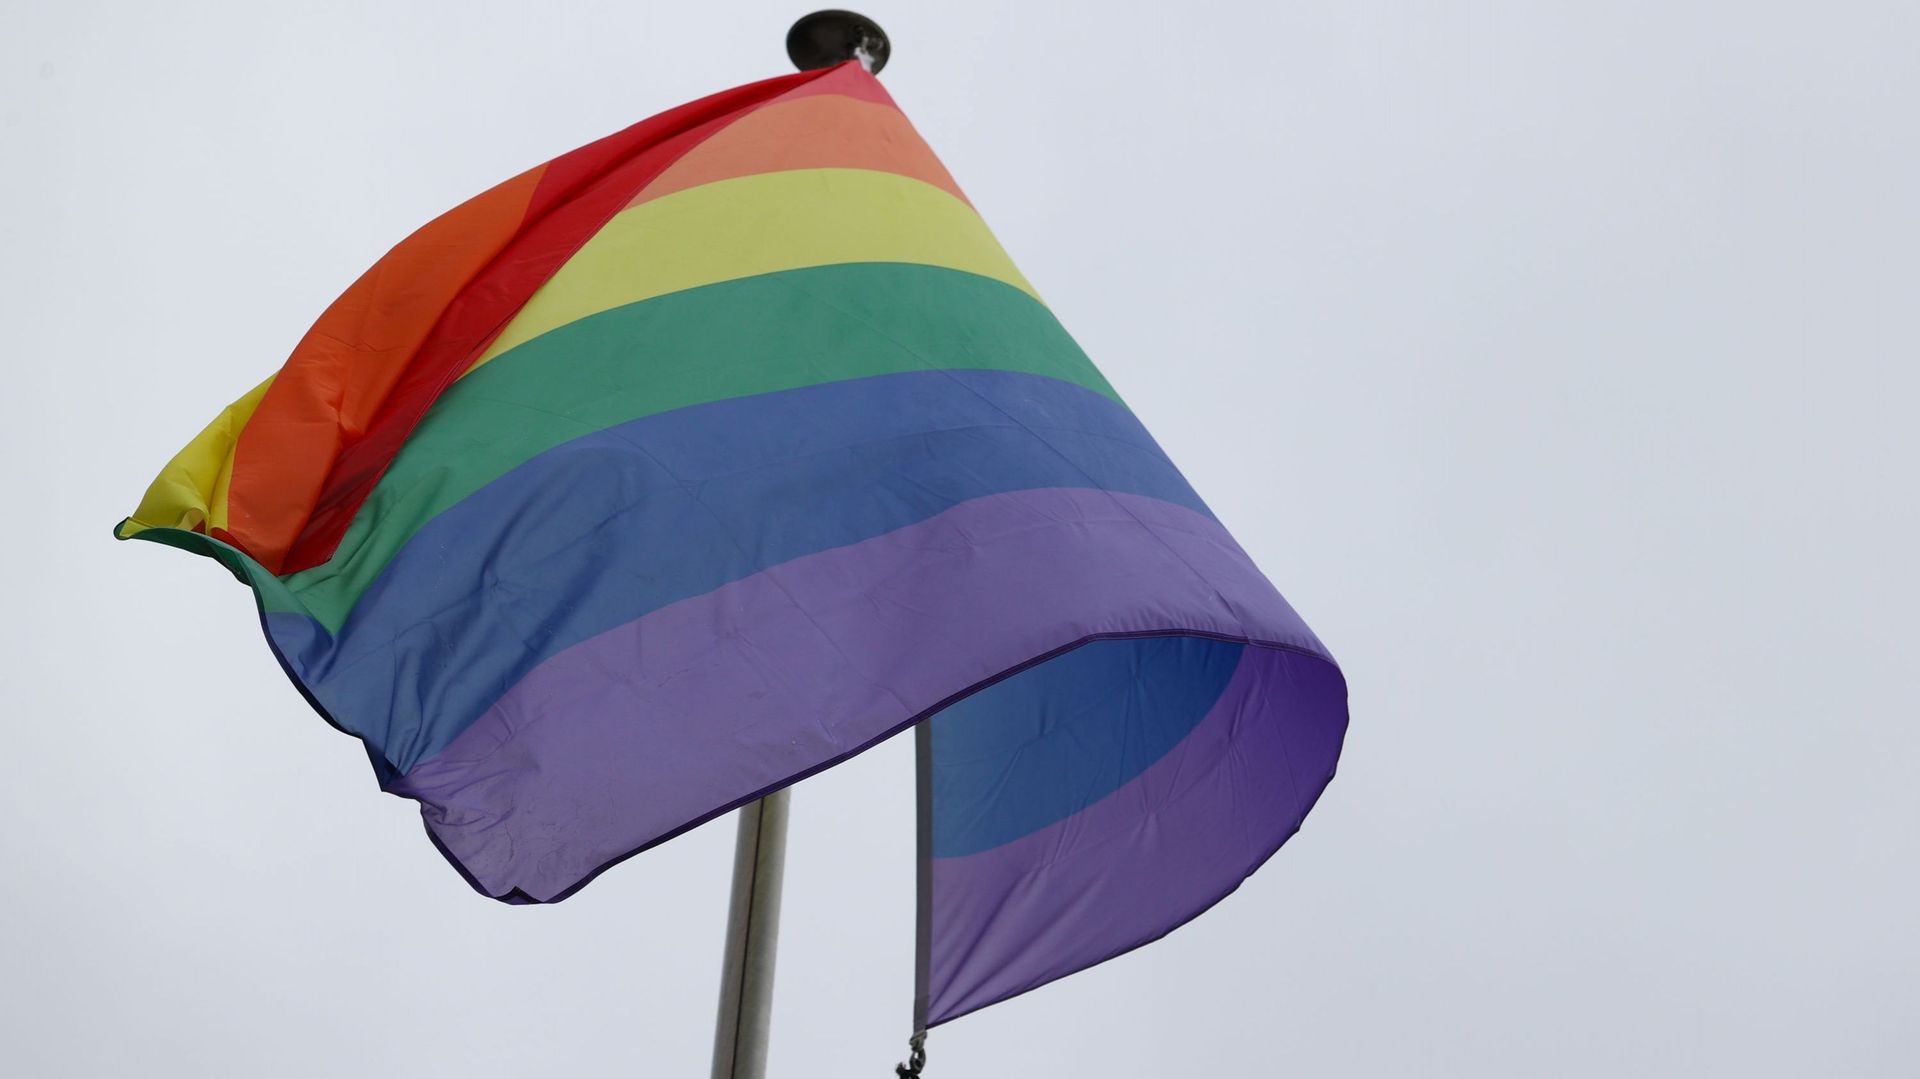 Assassinat à Beveren : le gouvernement flamand prend des mesures supplémentaires contre l'homophobie